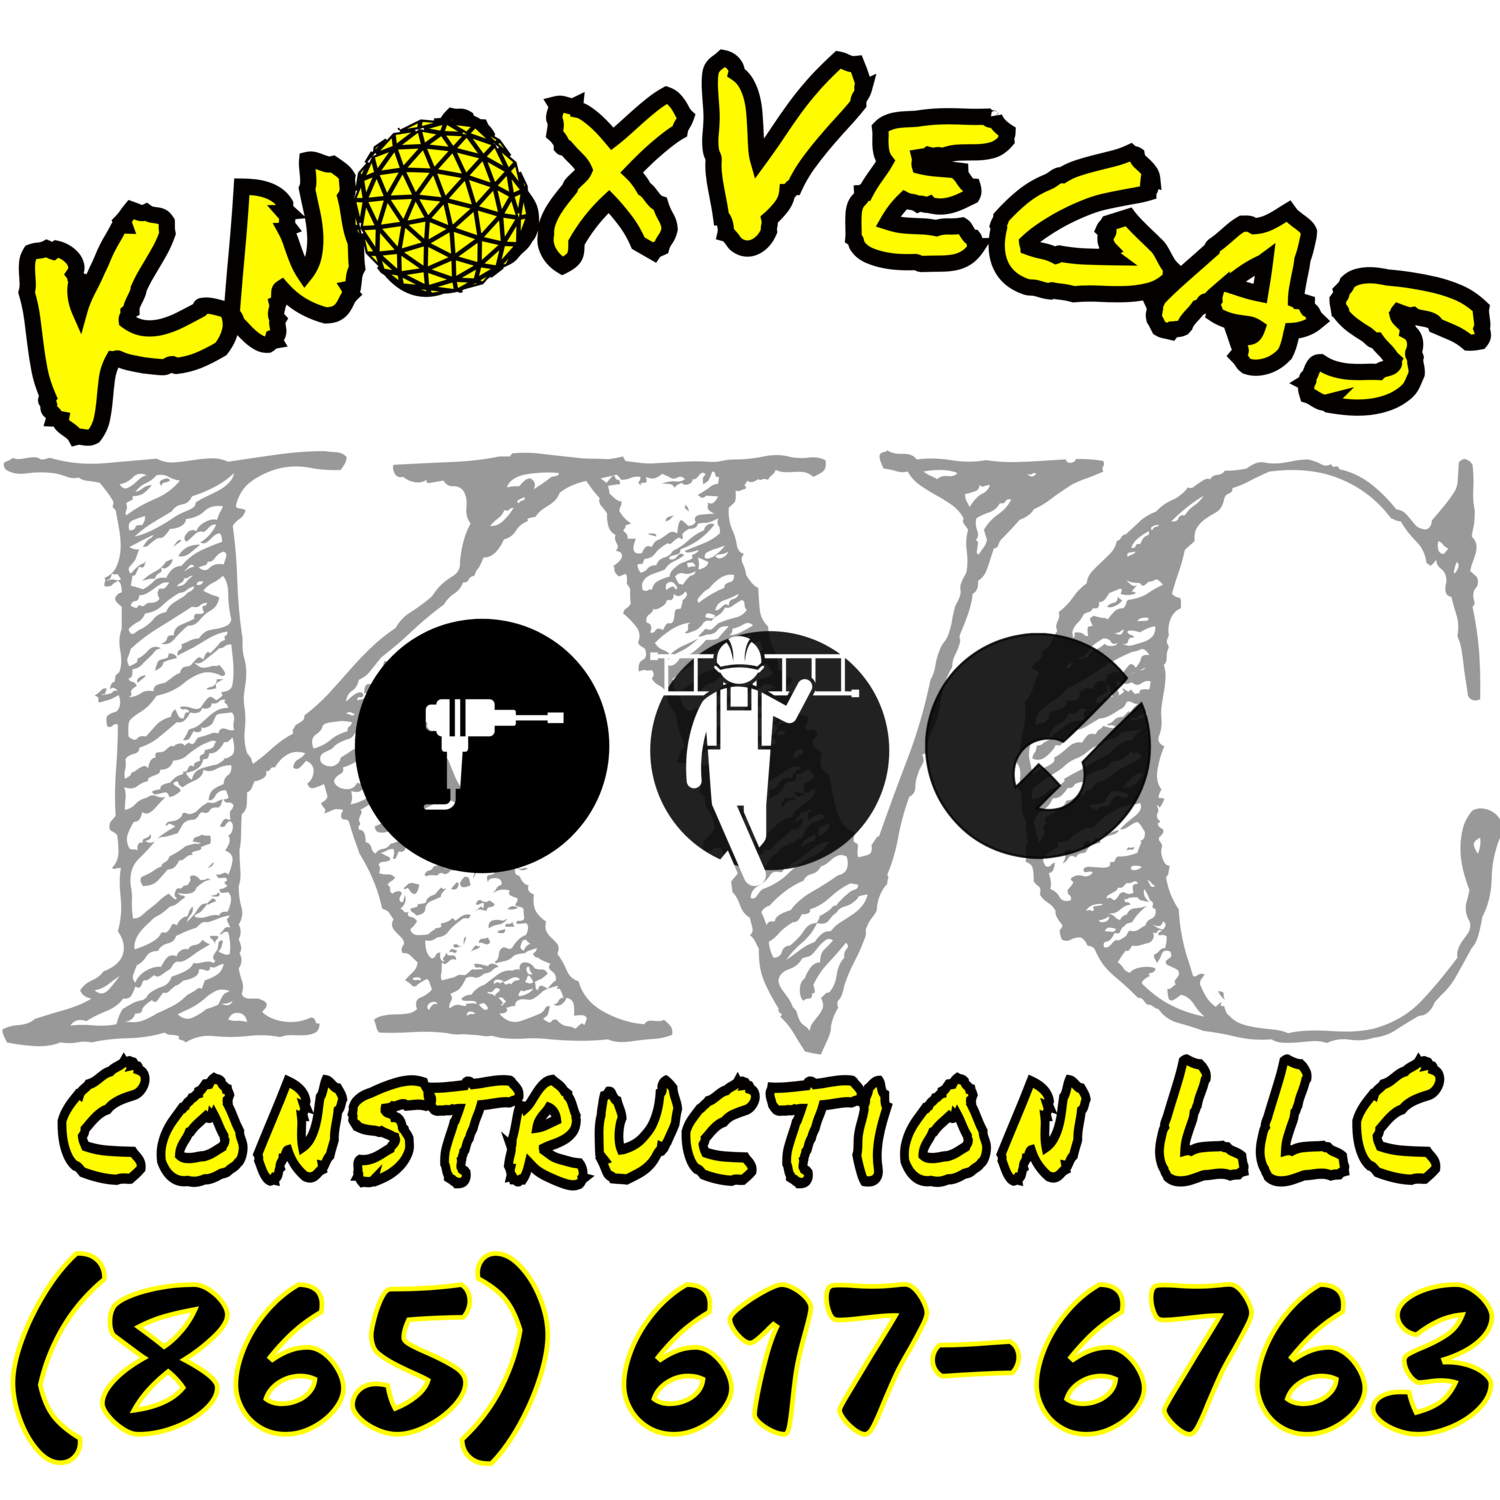 KnoxVegas, LLC